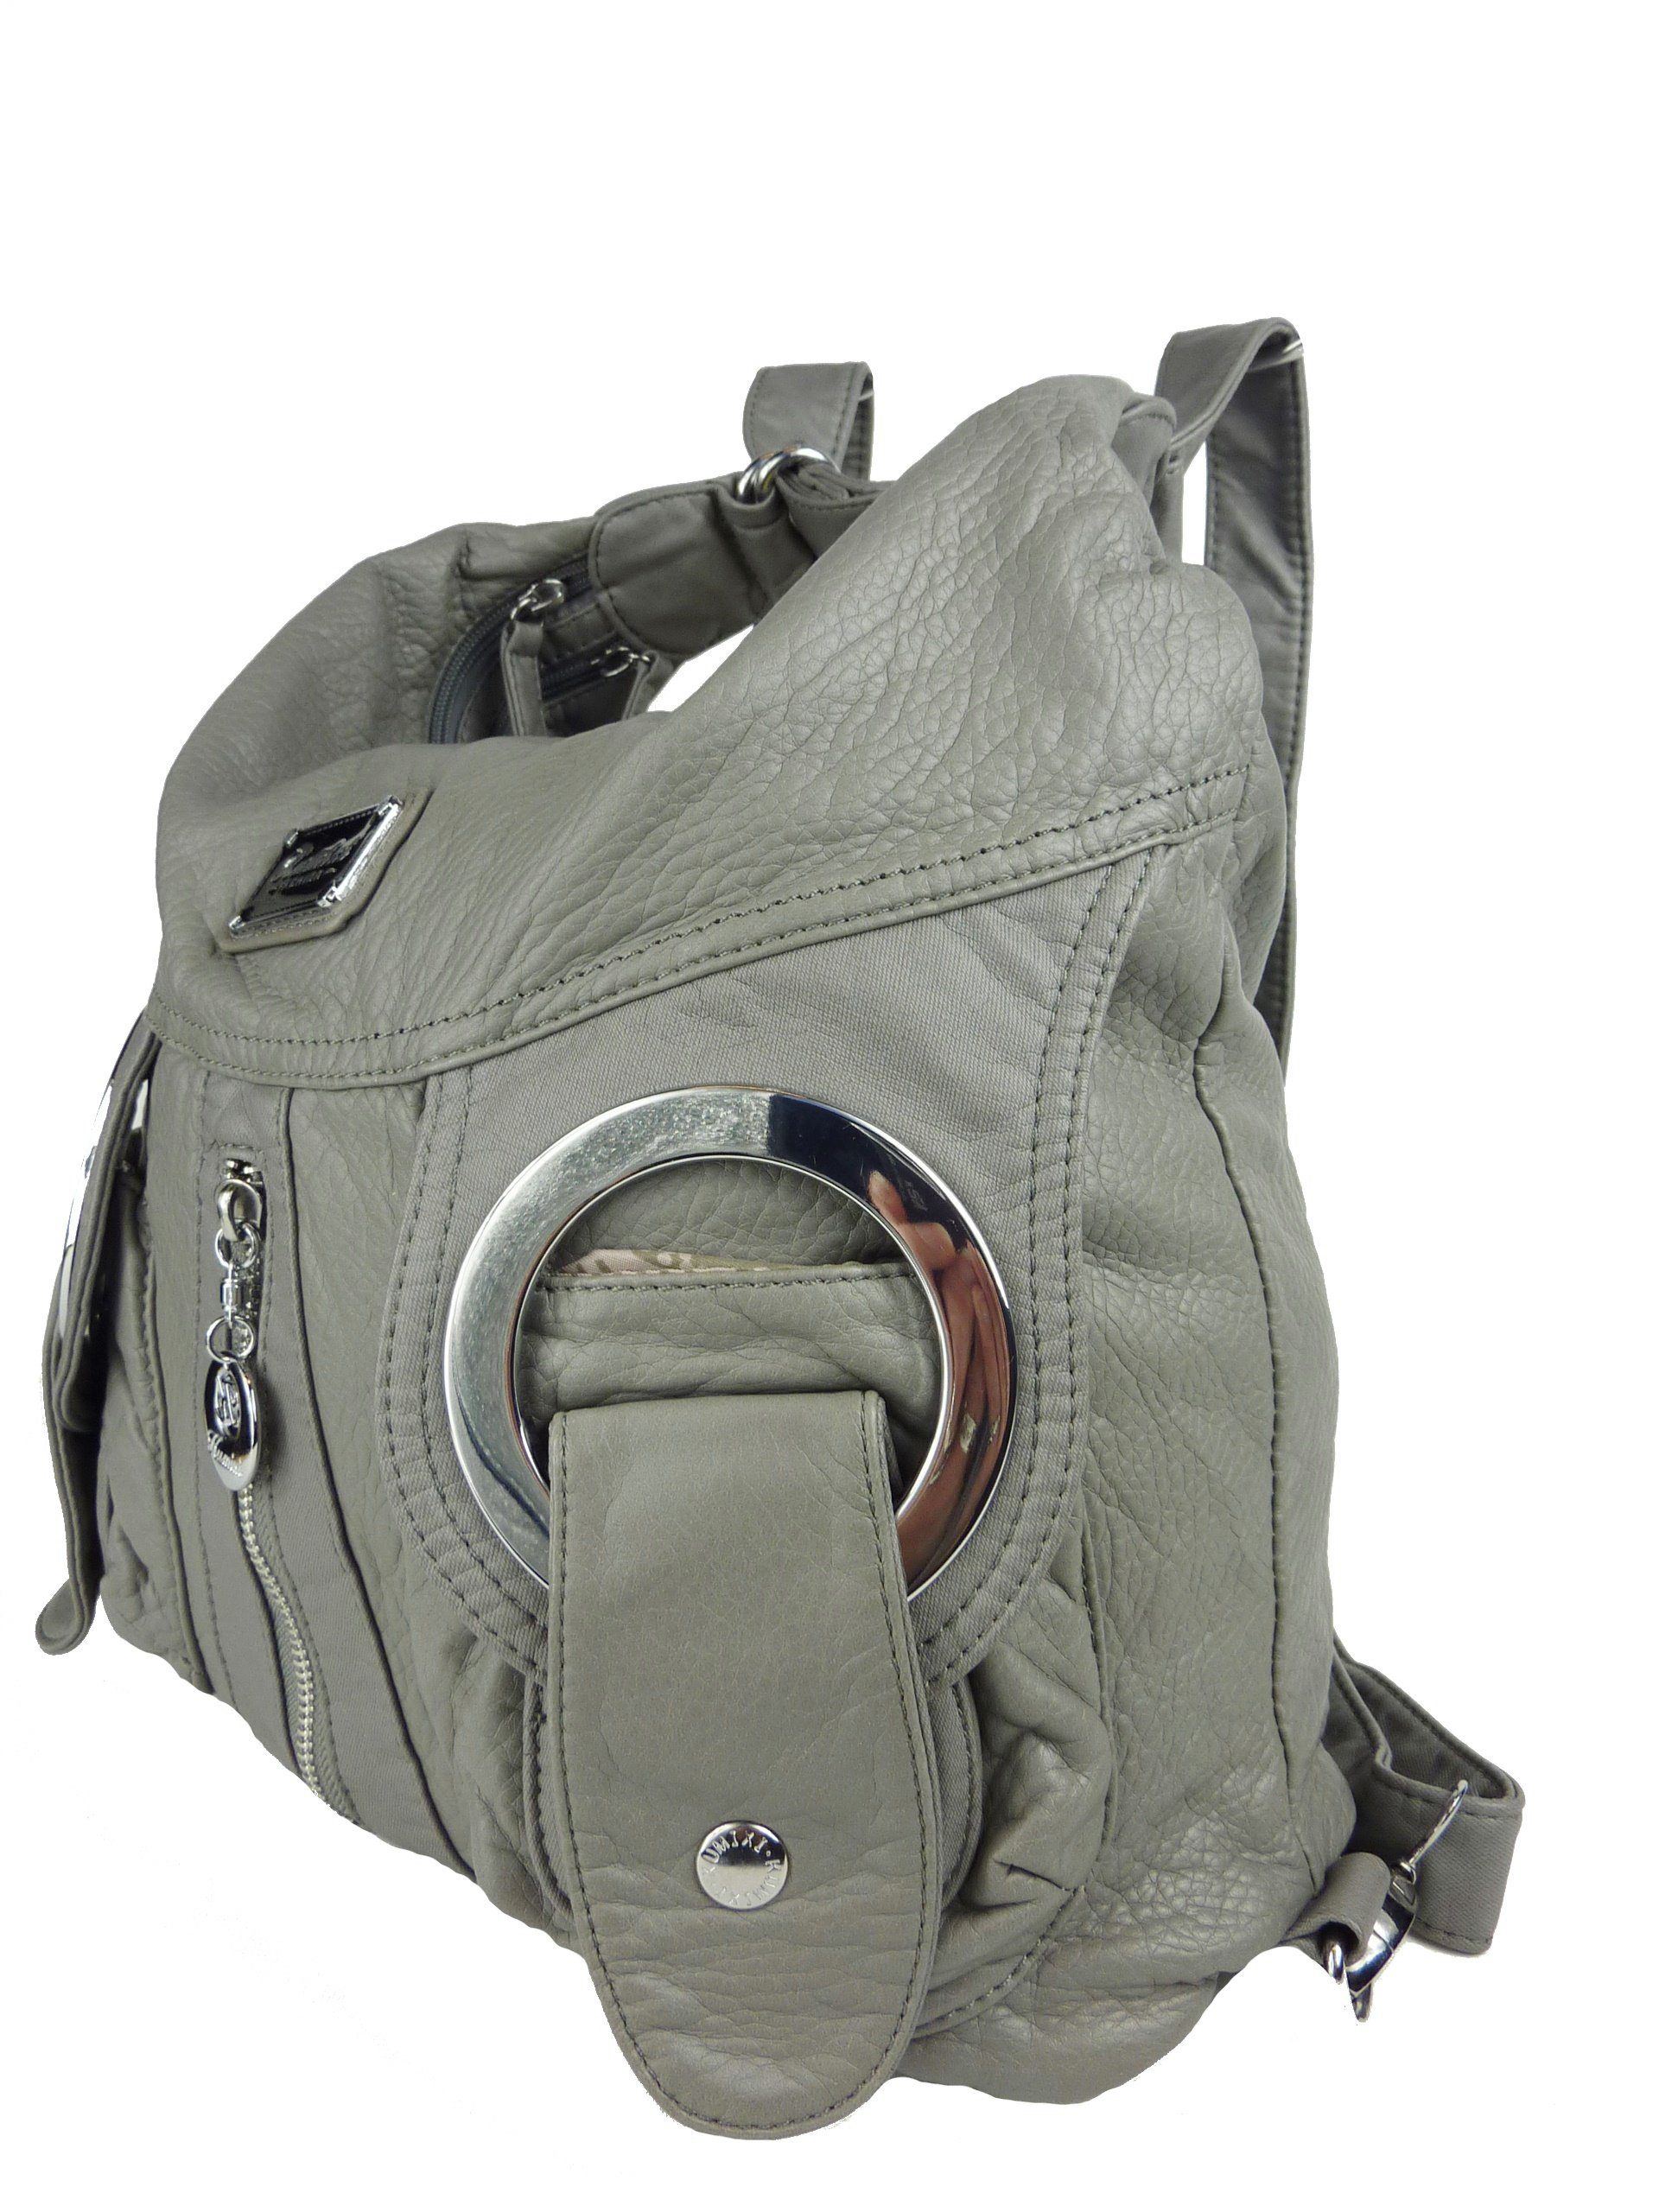 Taschen4life Schultertasche Rucksacktasche W6802 Multifunktionstasche, Tasche oder Rucksack, verstellbarer Schulterriemen, als Schultertasche oder Rucksack tragbar grau